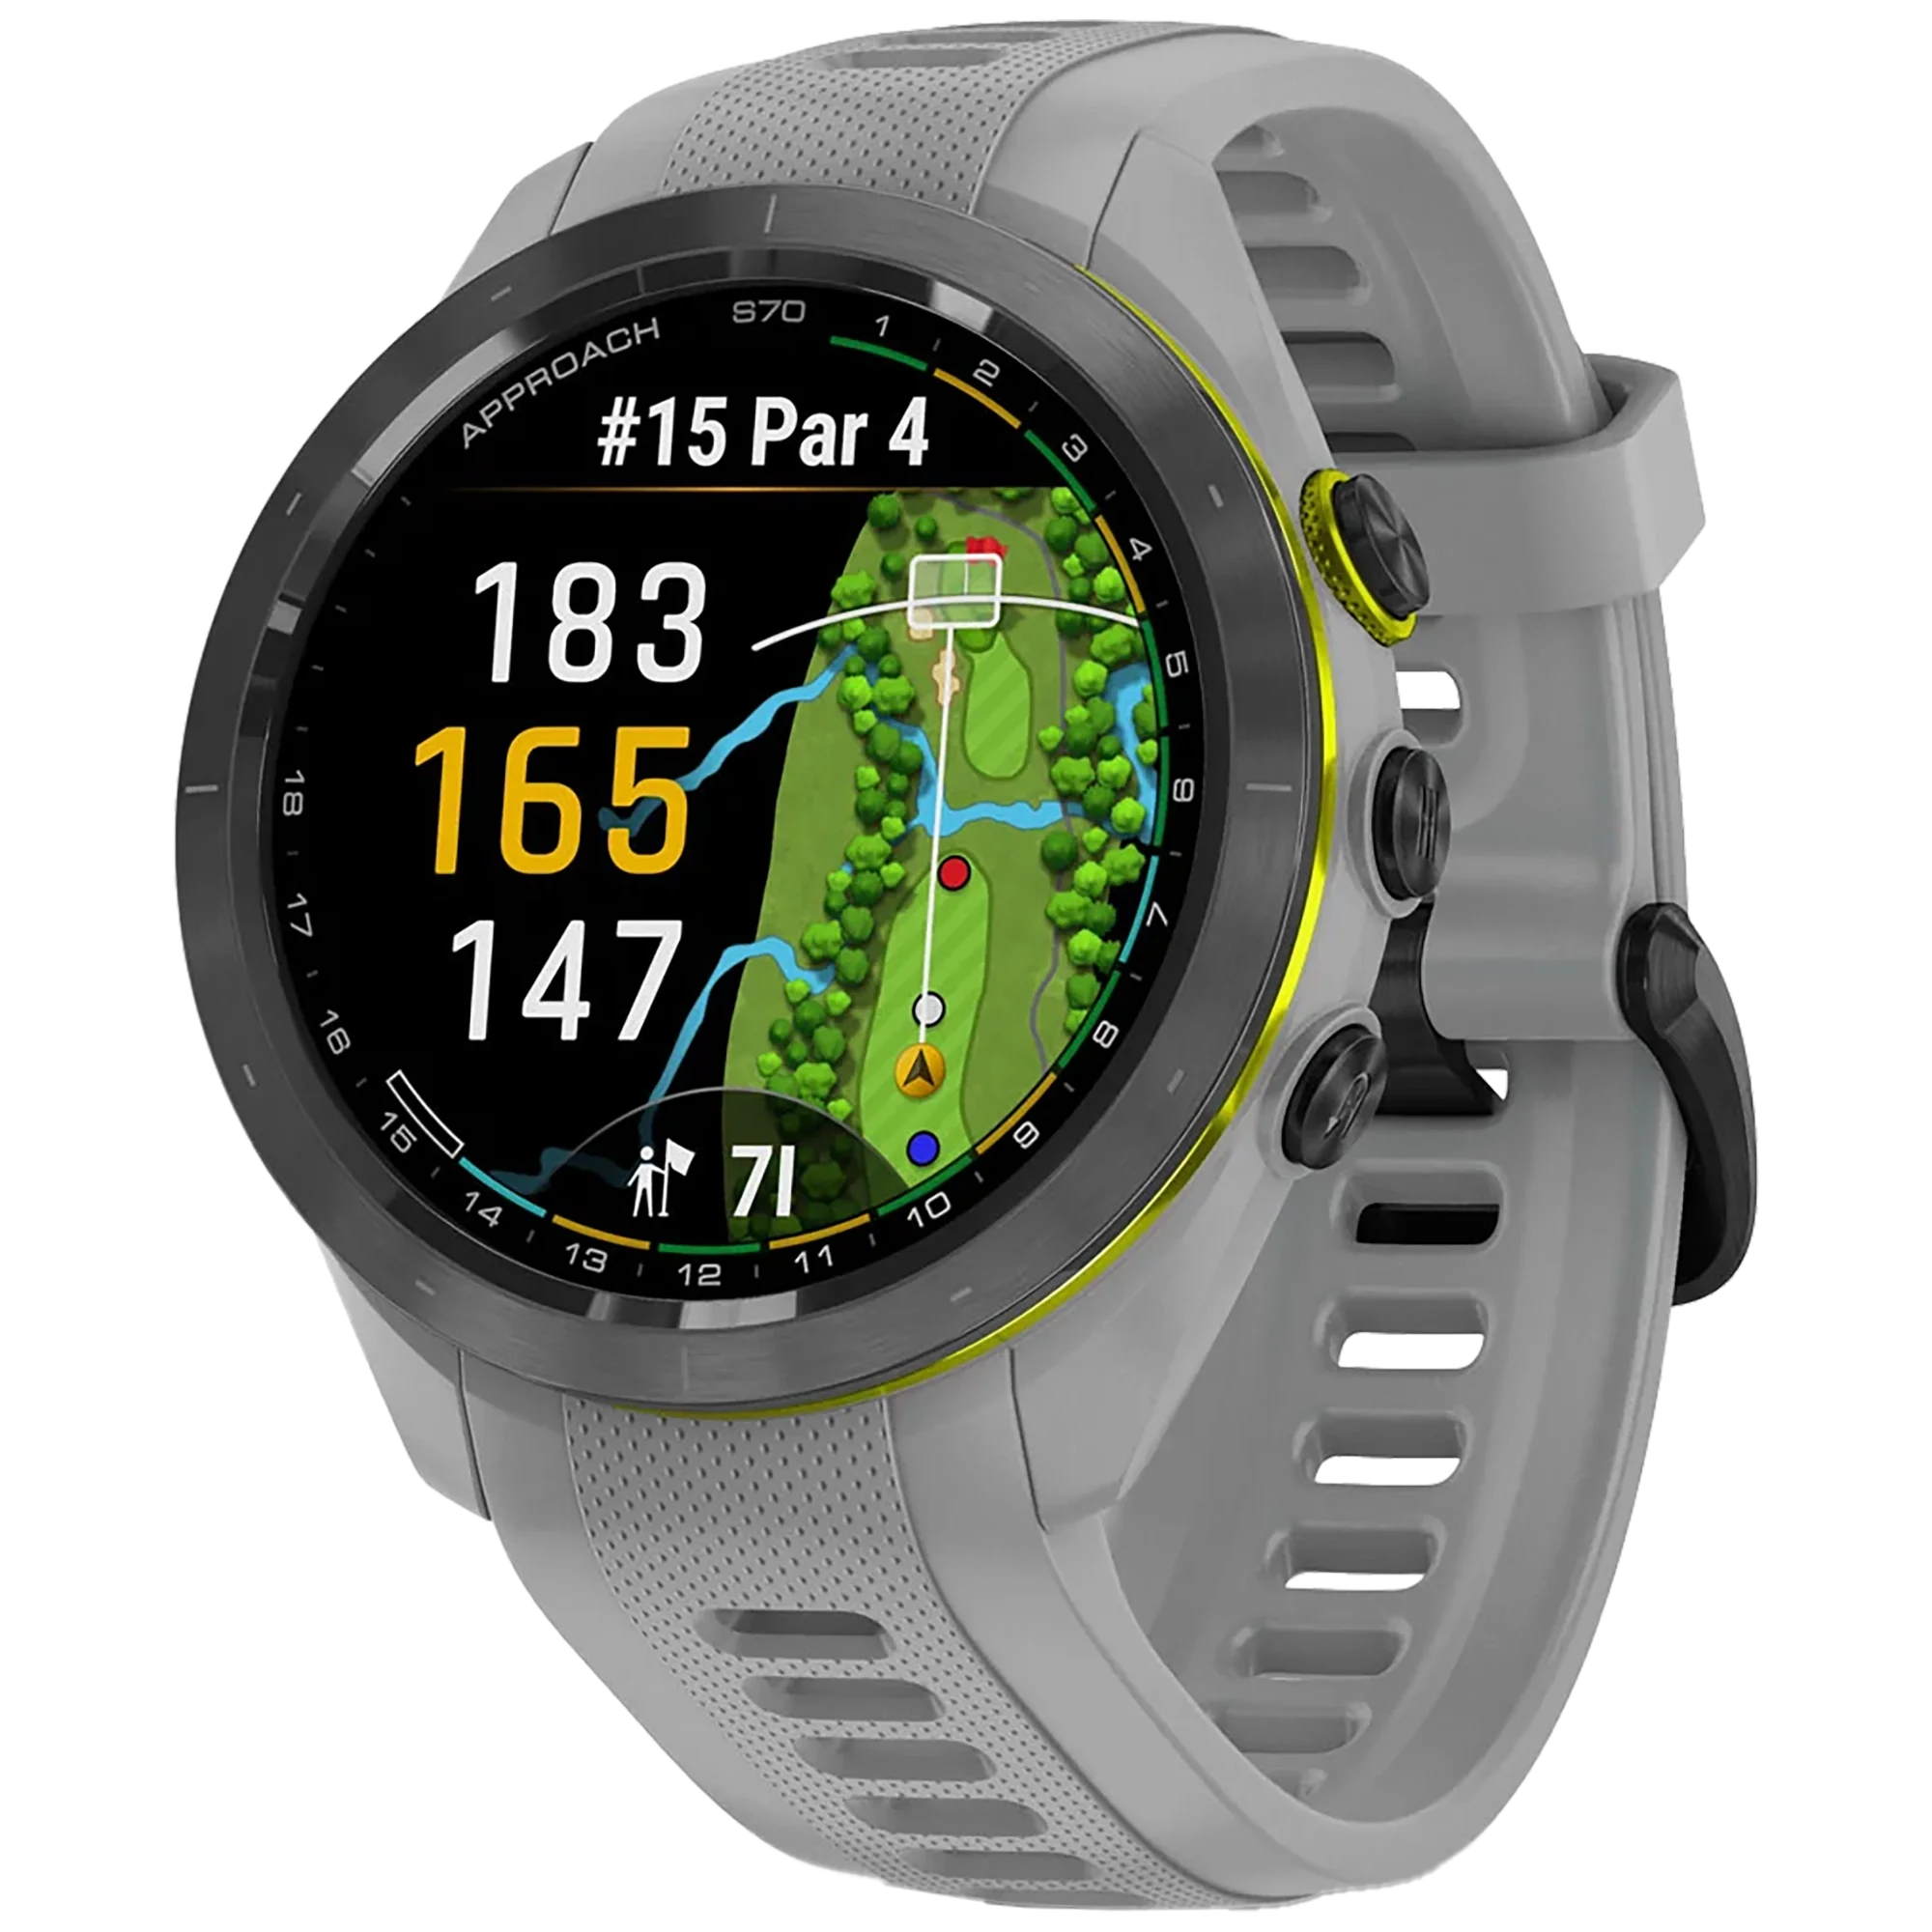 Foto: Smartwatch Garmin Approach S70